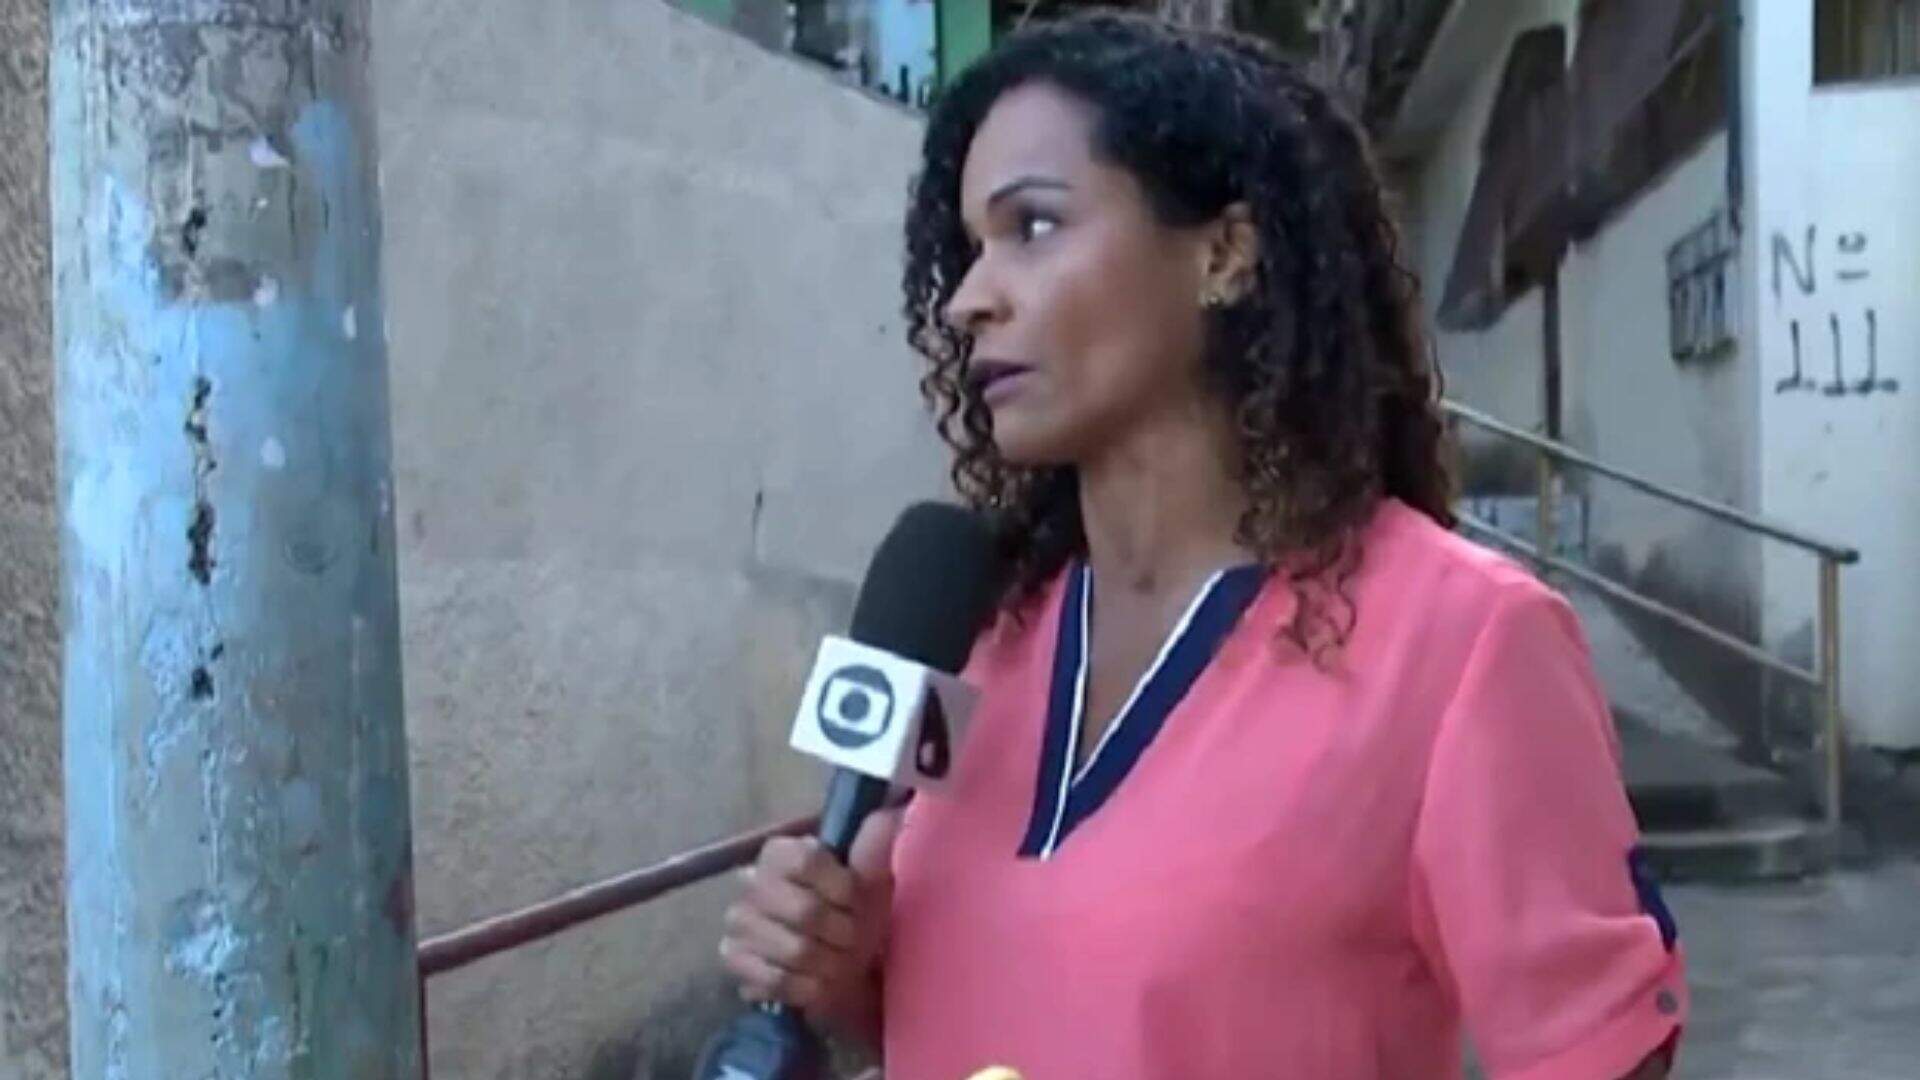 Ameaçada ao vivo! Repórter da Globo passa por momentos de apuros e viraliza: “Armado!” - Metropolitana FM